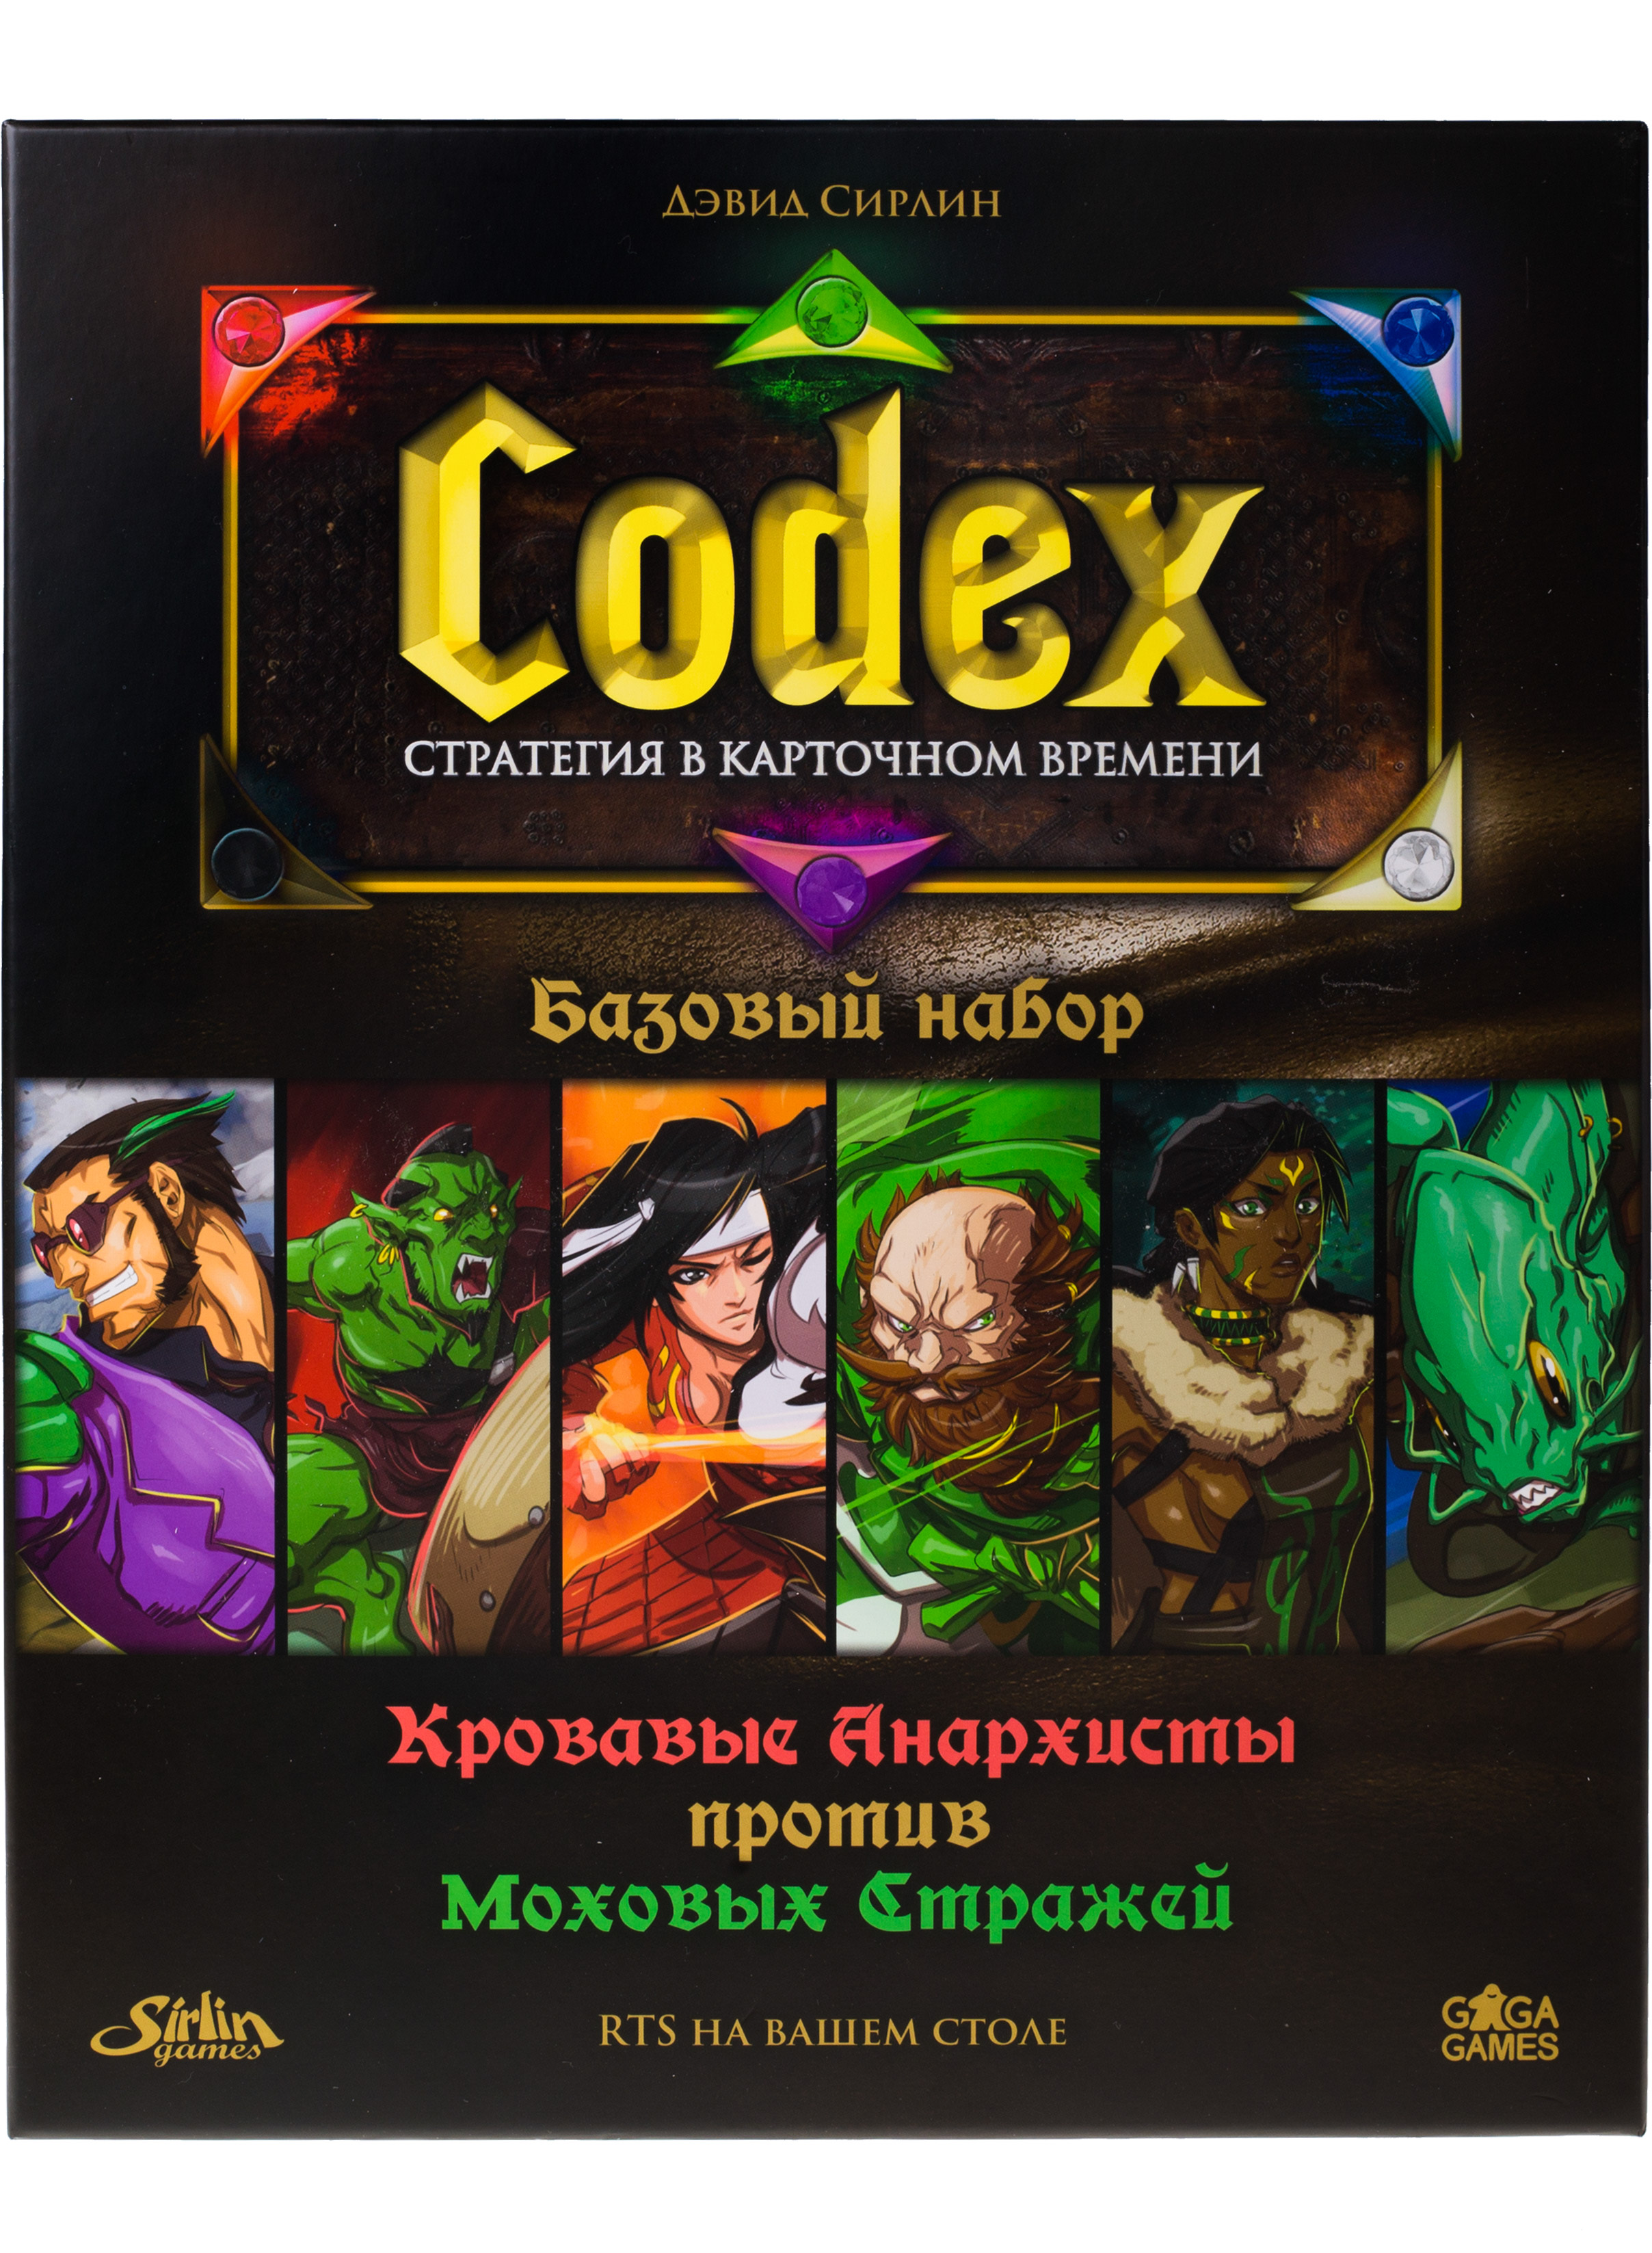 Карточная игра Gaga Games Codex базовый набор, на русском